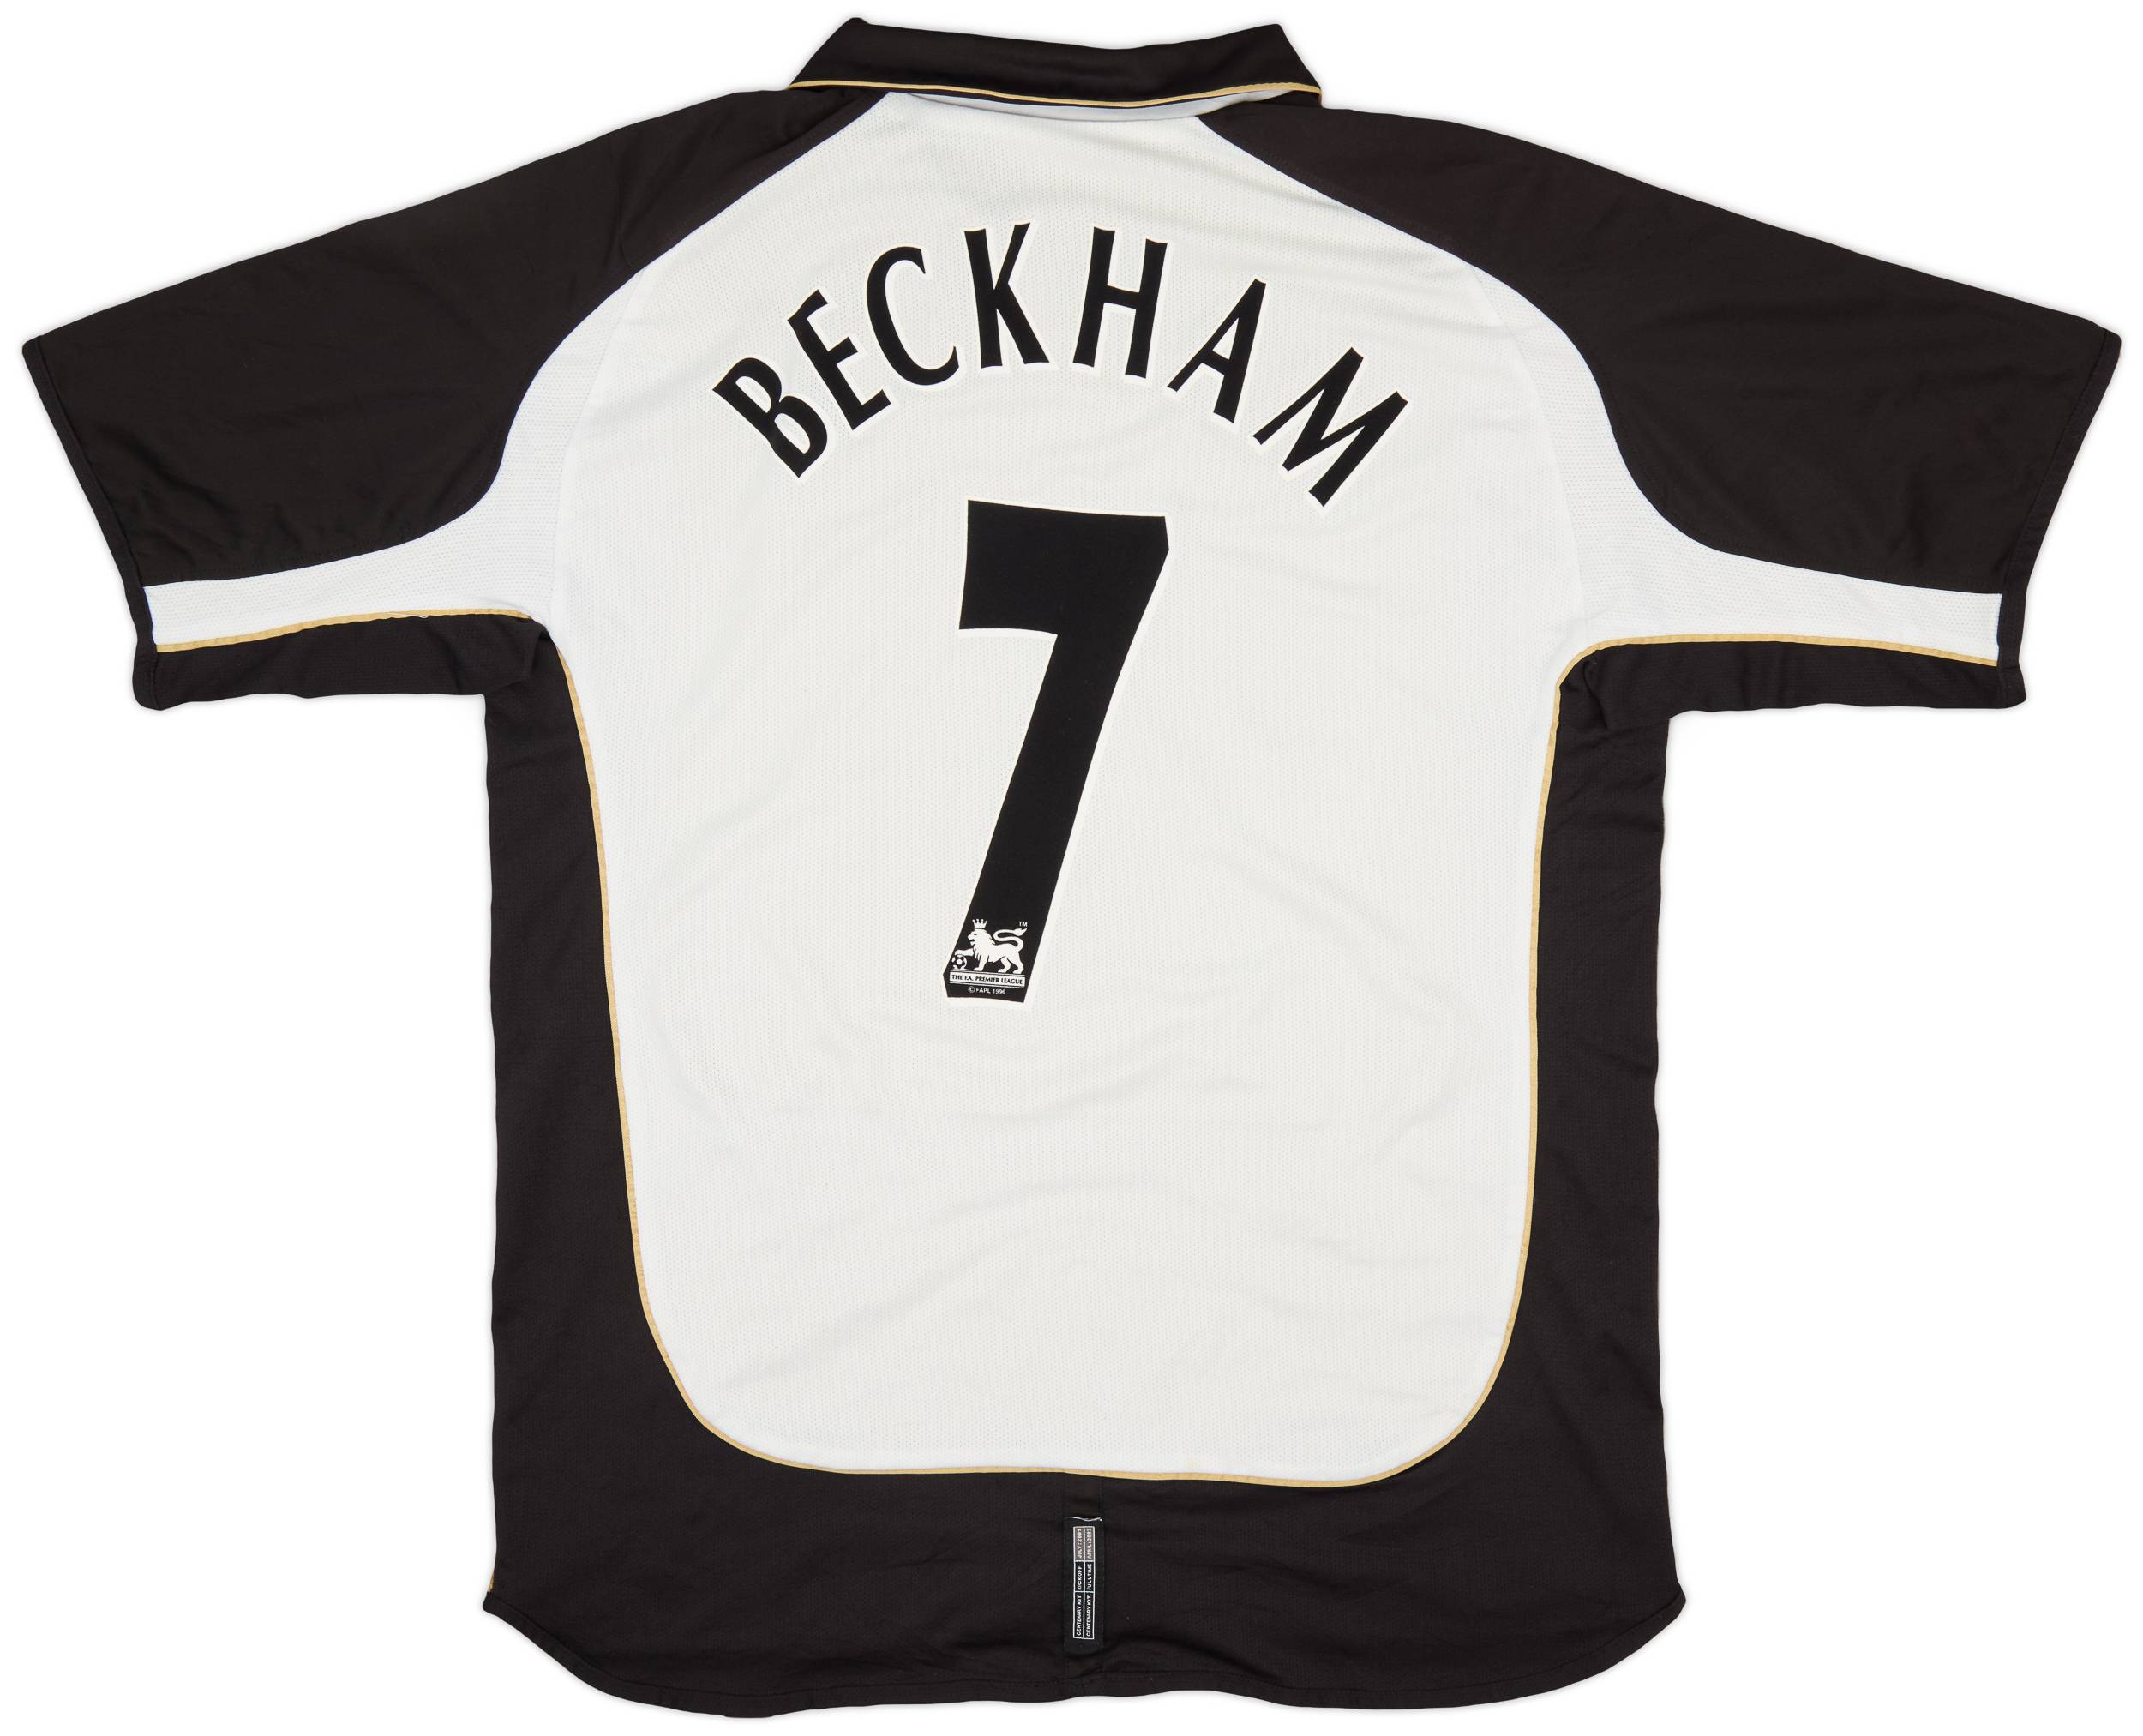 2001-02 Manchester United Centenary Away/Third Shirt Beckham #7 - 8/10 - (XL)